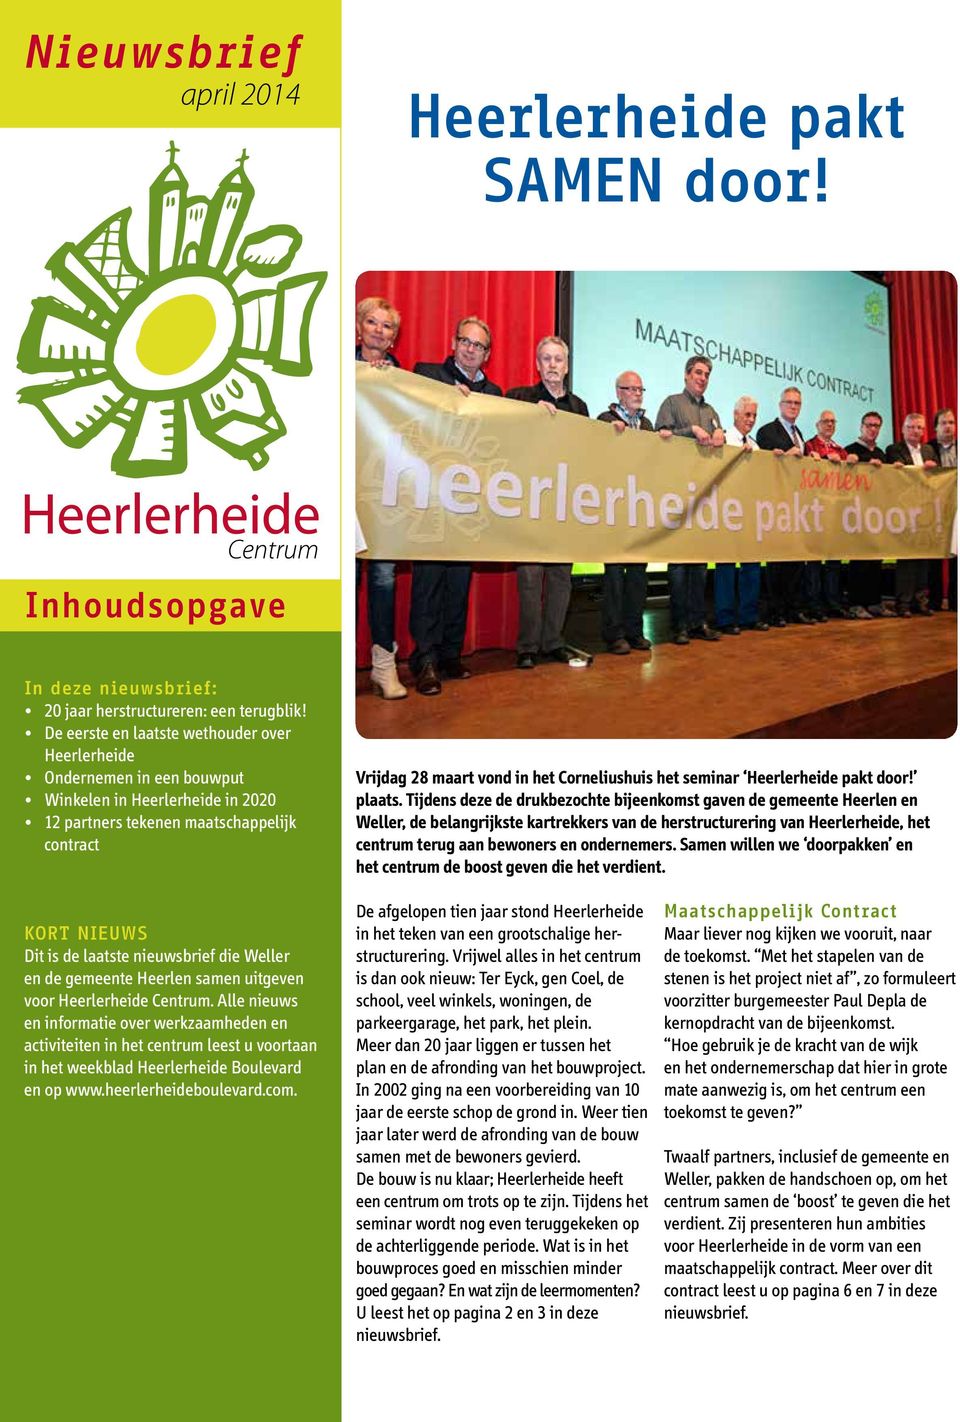 seminar Heerlerheide pakt door! plaats.